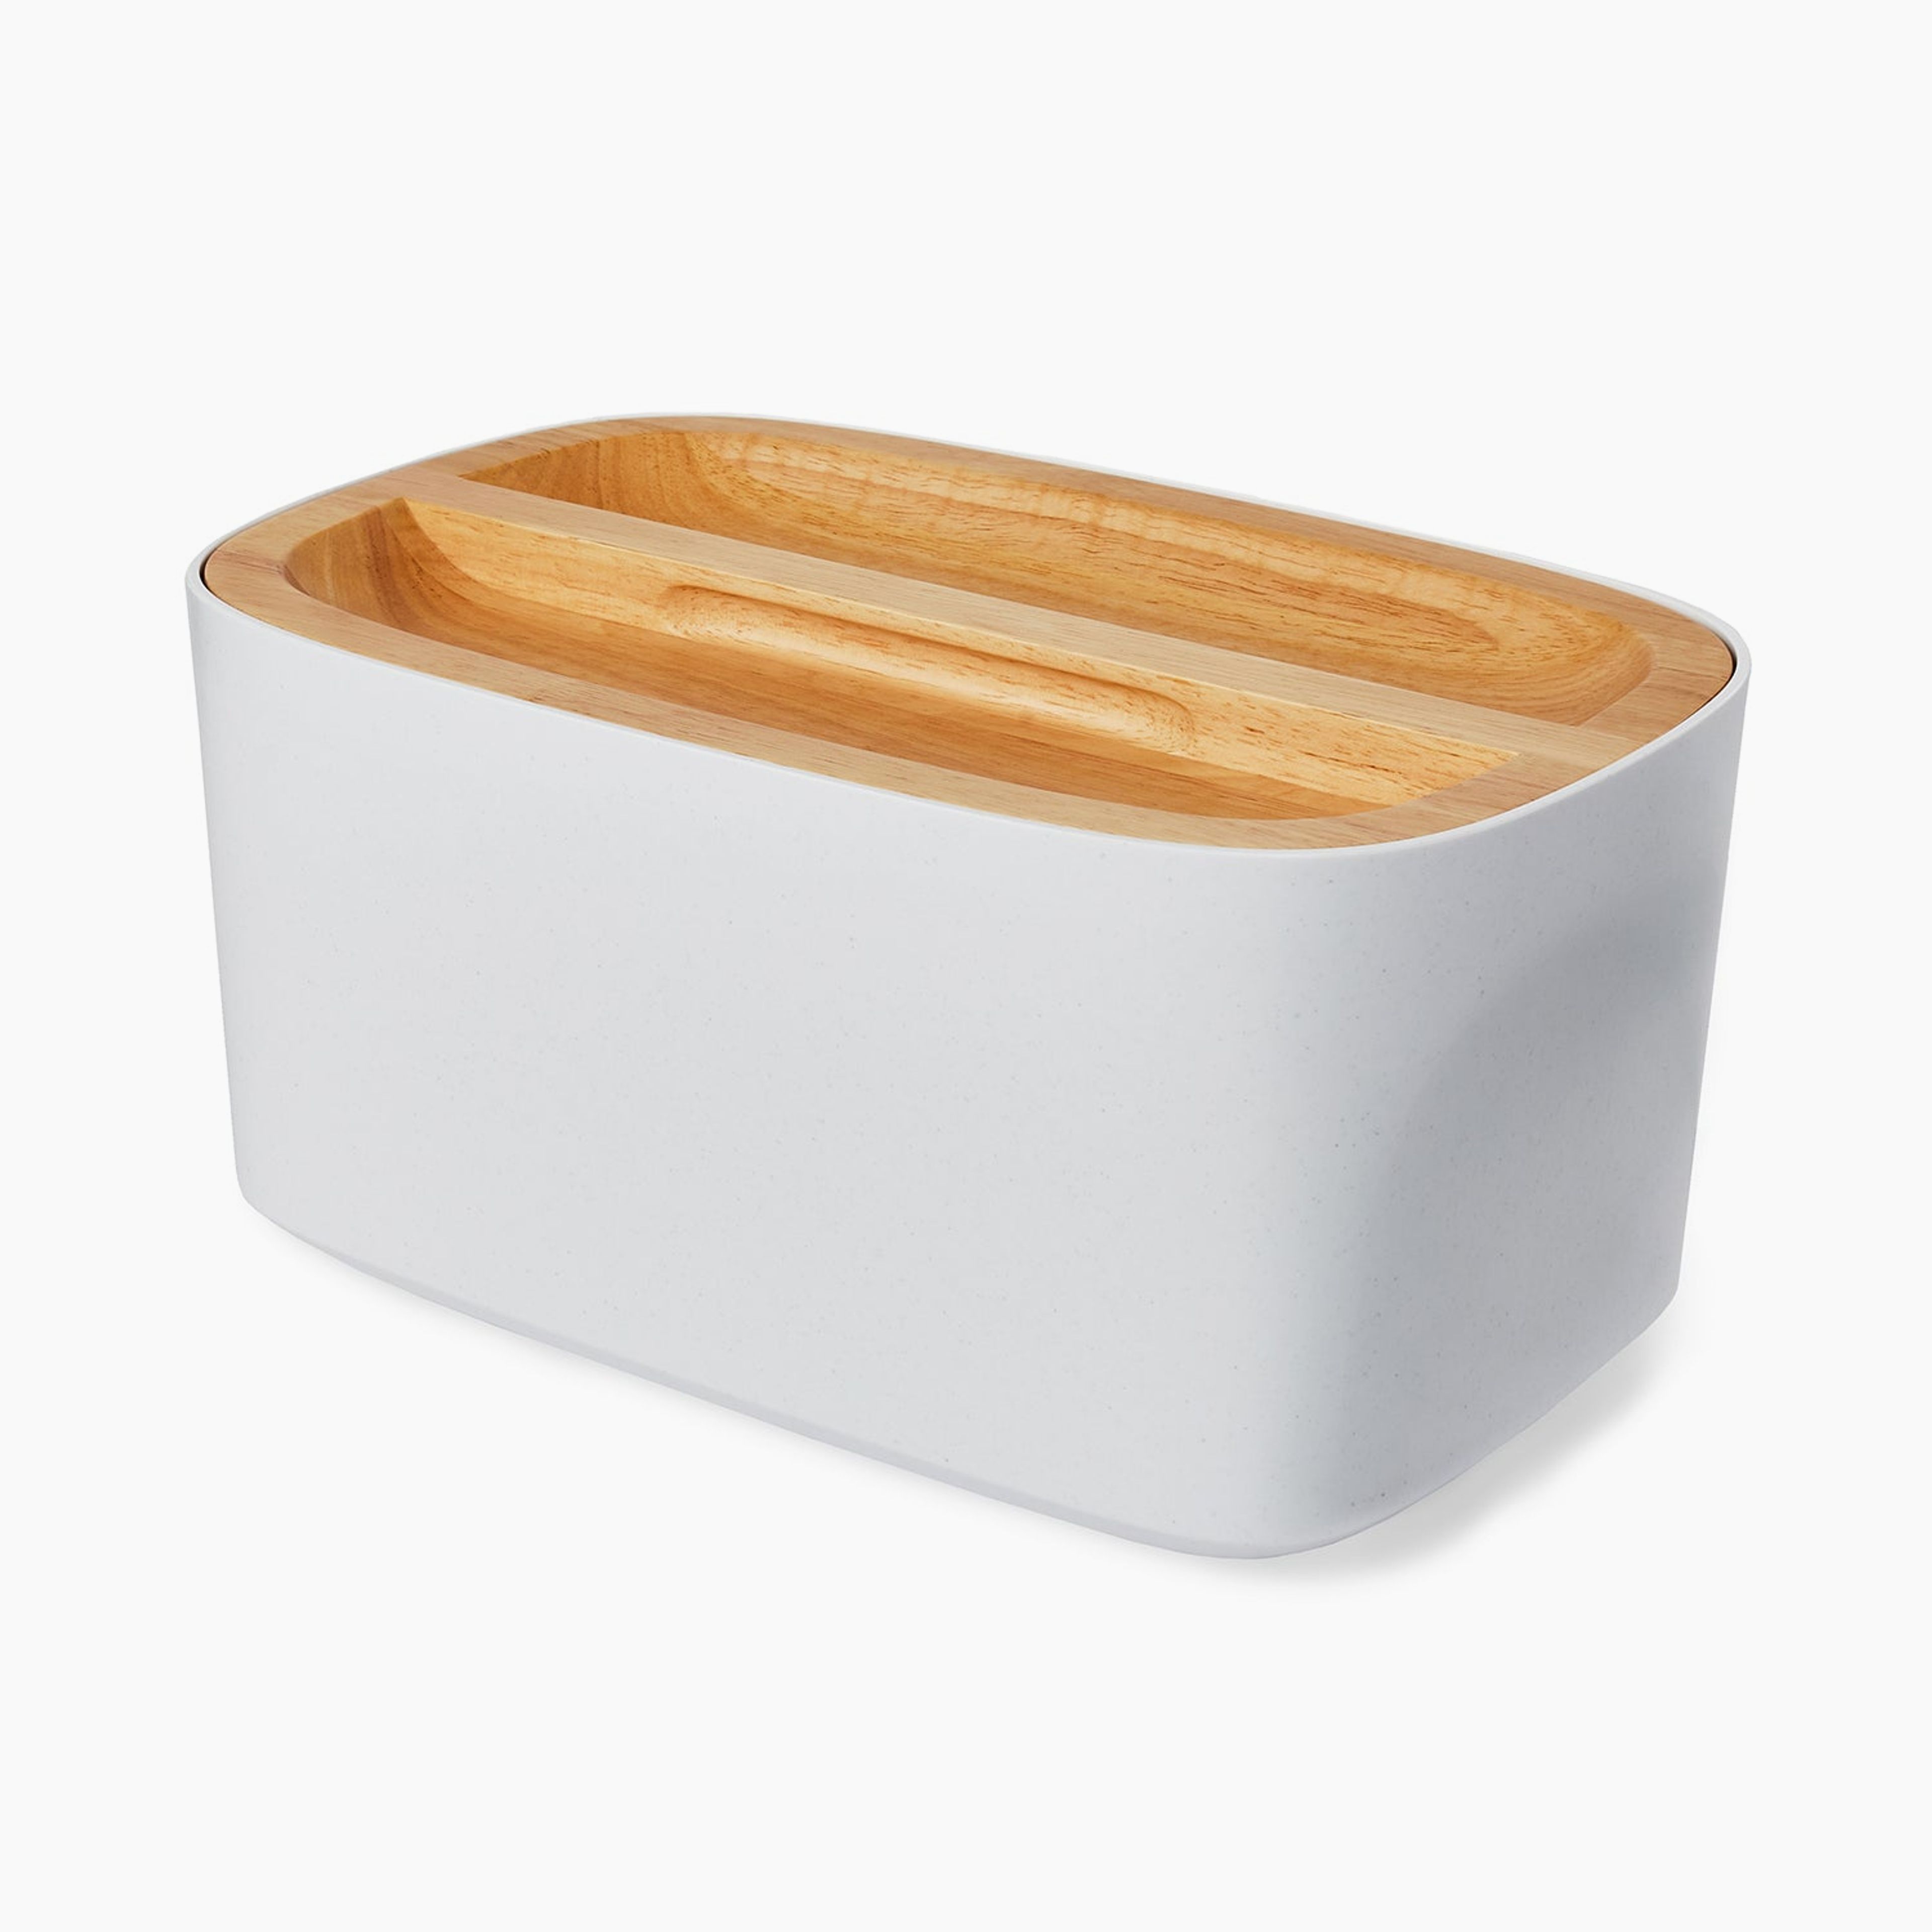 Union Bread Box (White)